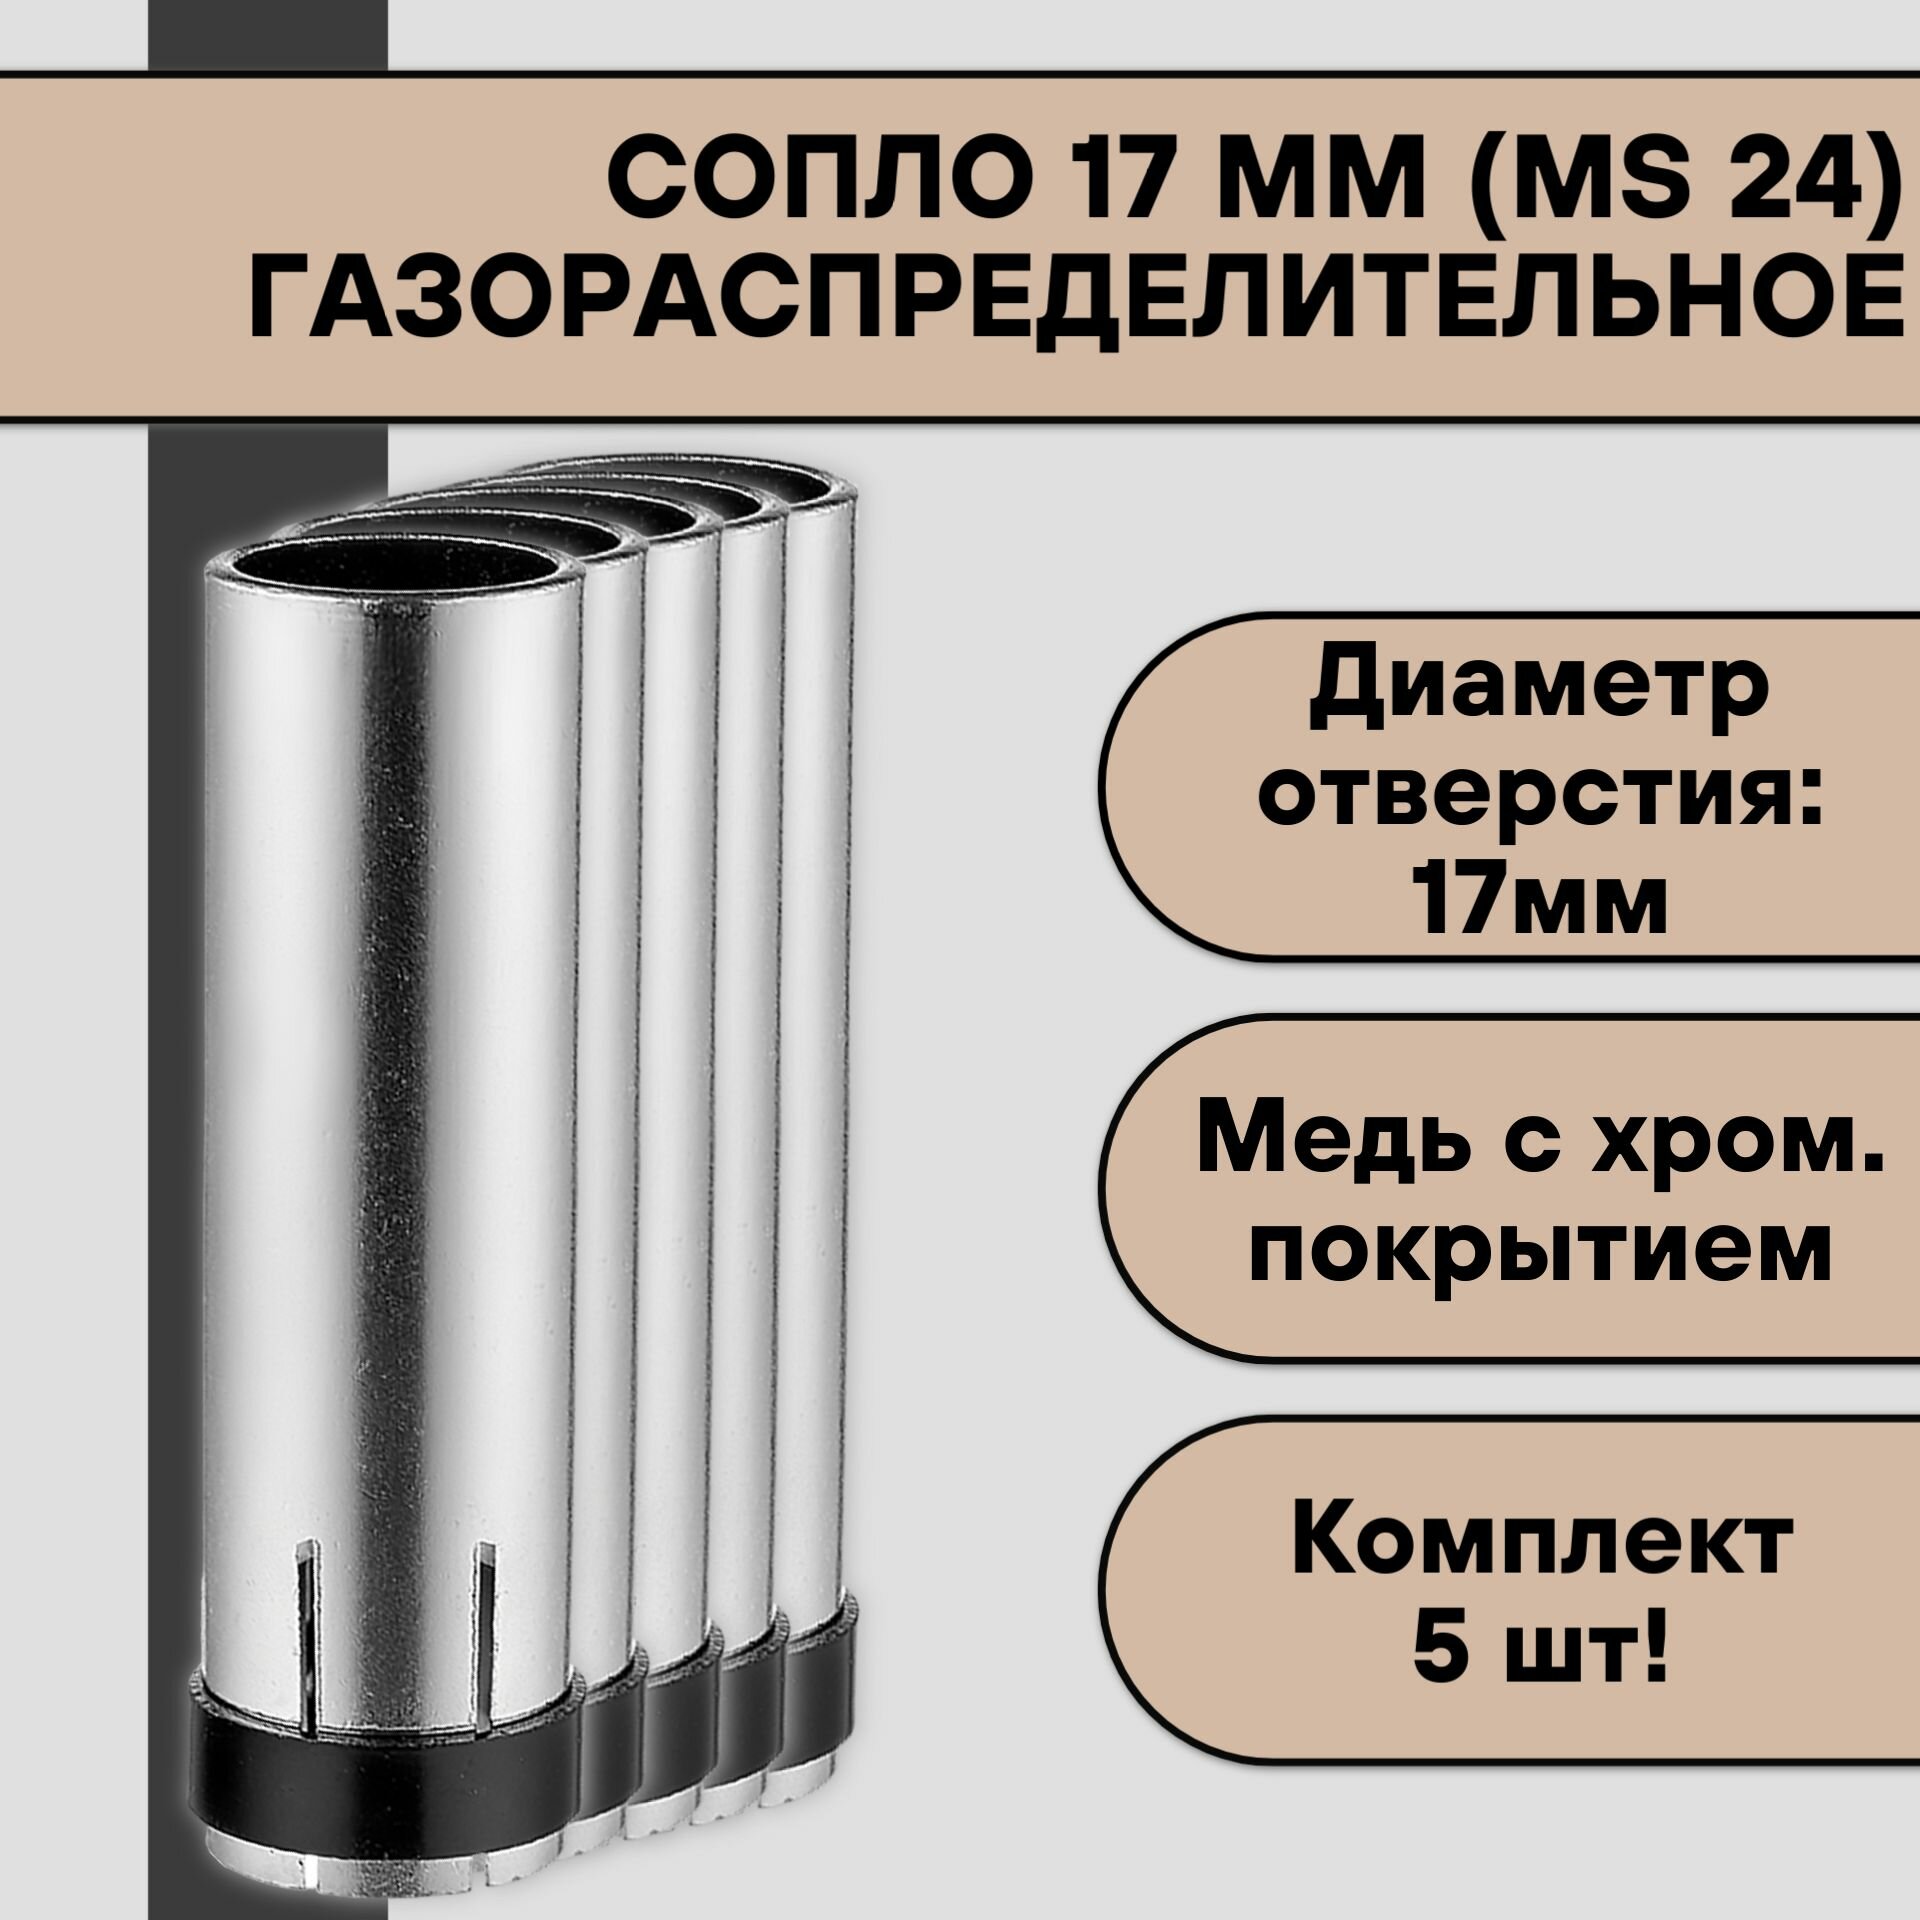 Сопло газораспределительное 17 мм (MS 24) цилиндрическое (5 шт)